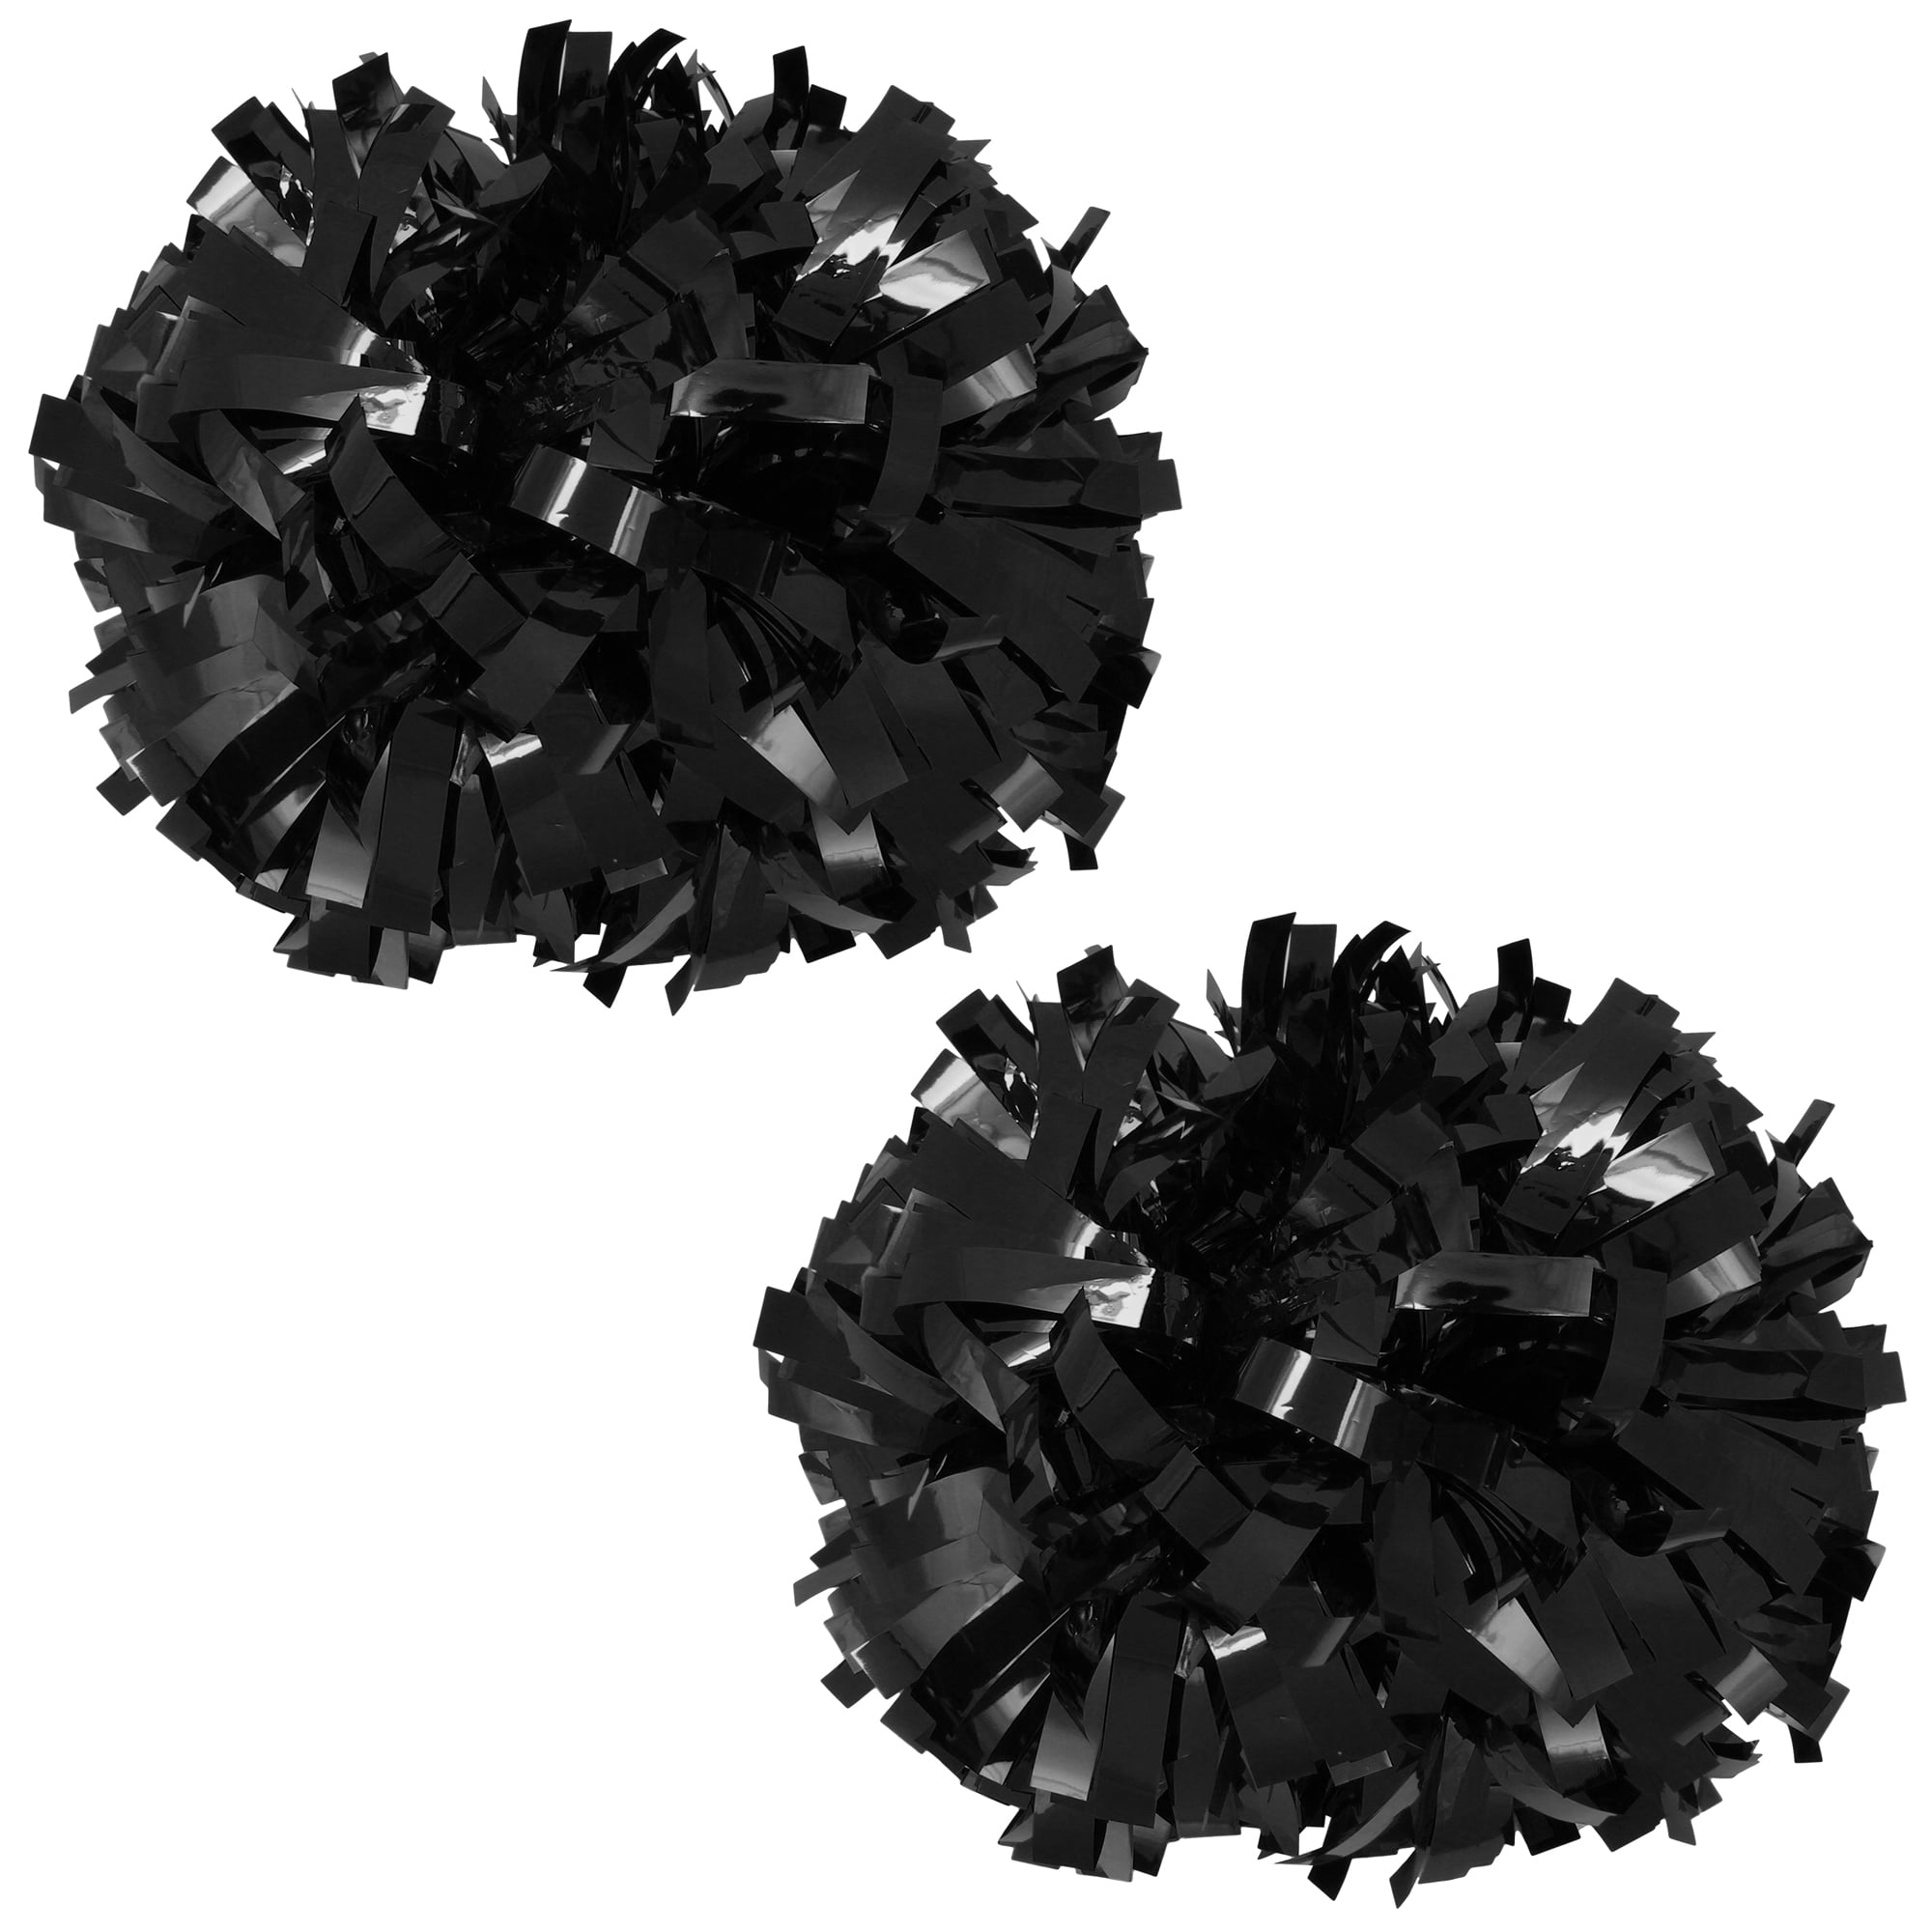 Black Pom-Poms, Black Pom Poms, Black Cheerleader Pom Poms